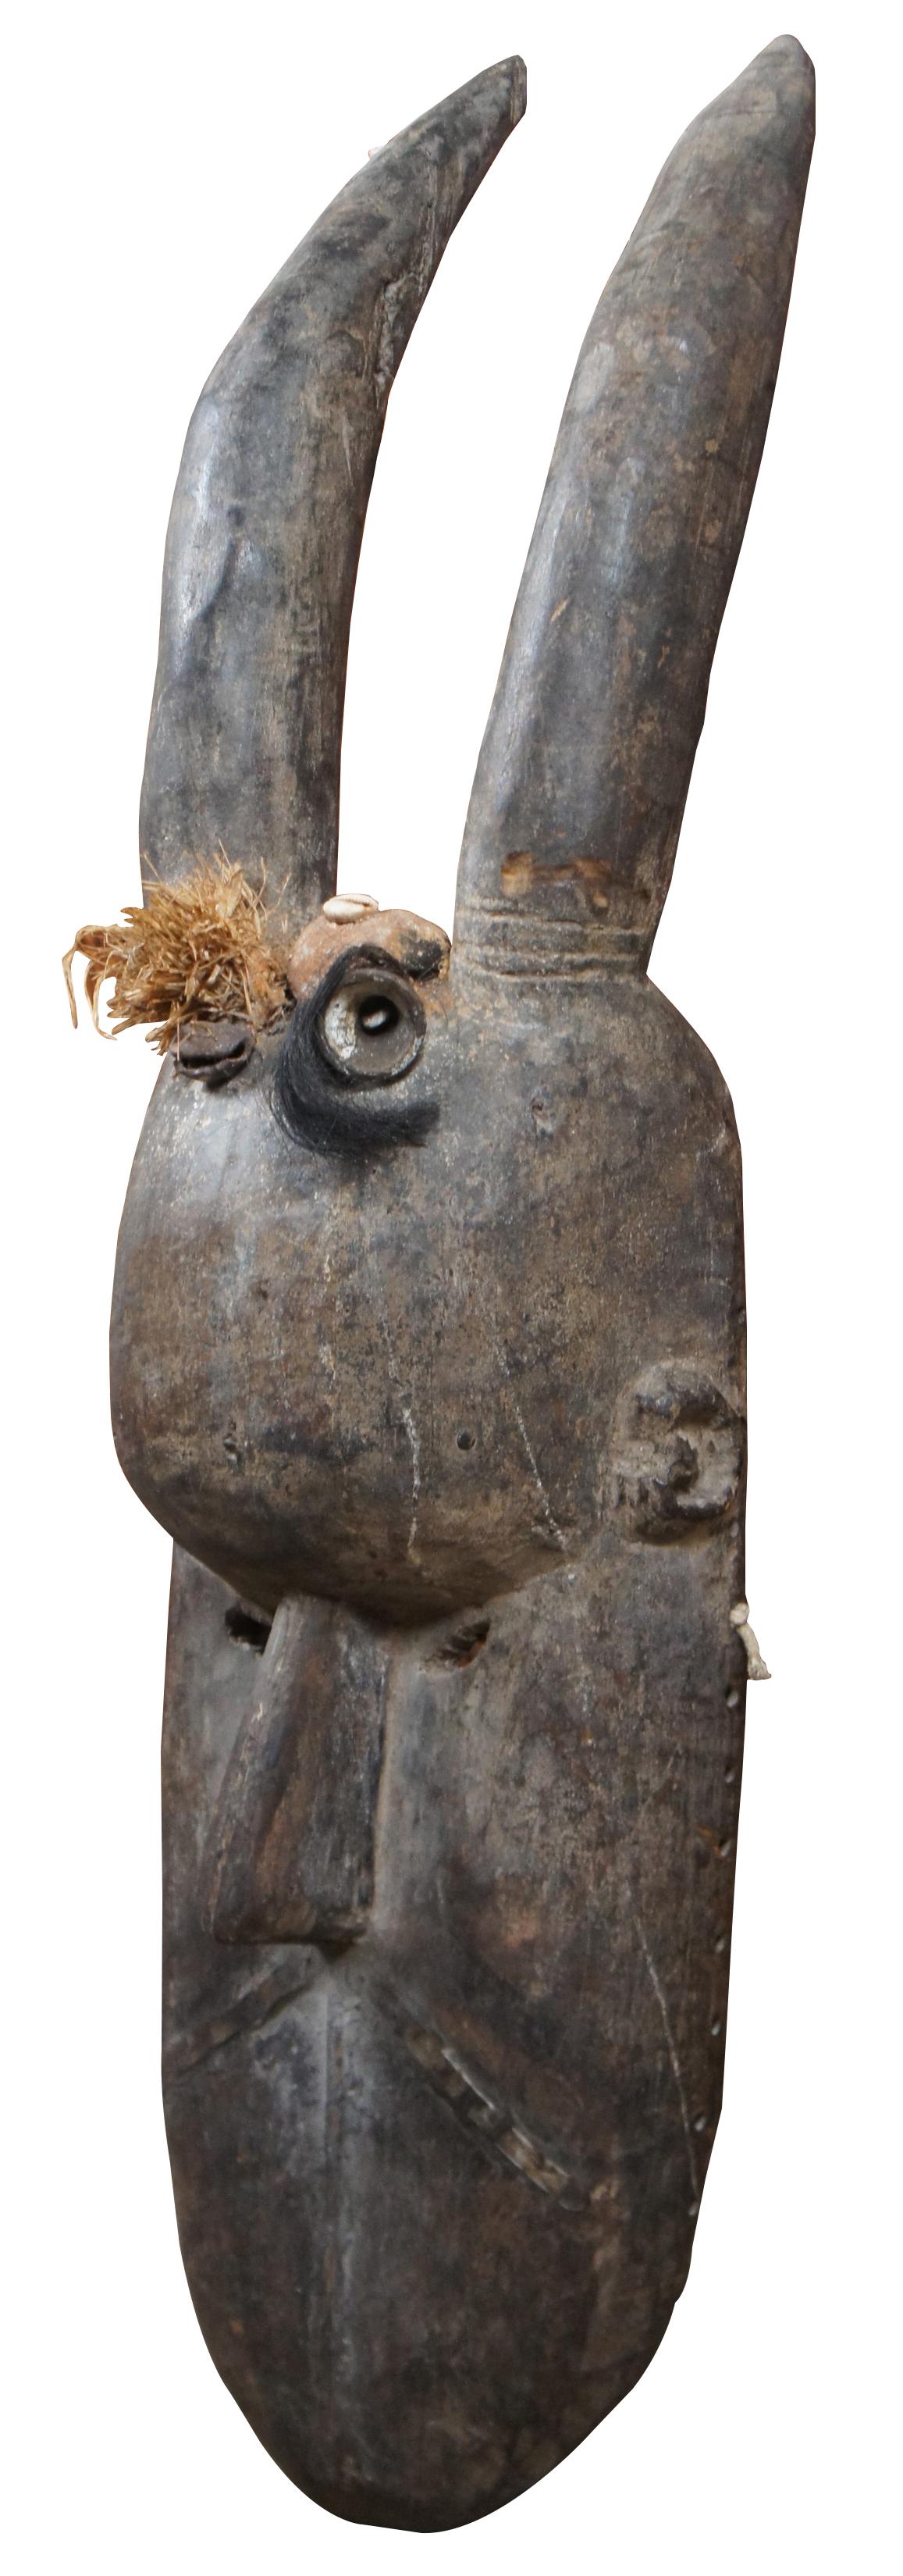 Masque Toma ou Landai ancien, sculpté à la main, originaire de Guinée, en Afrique. 